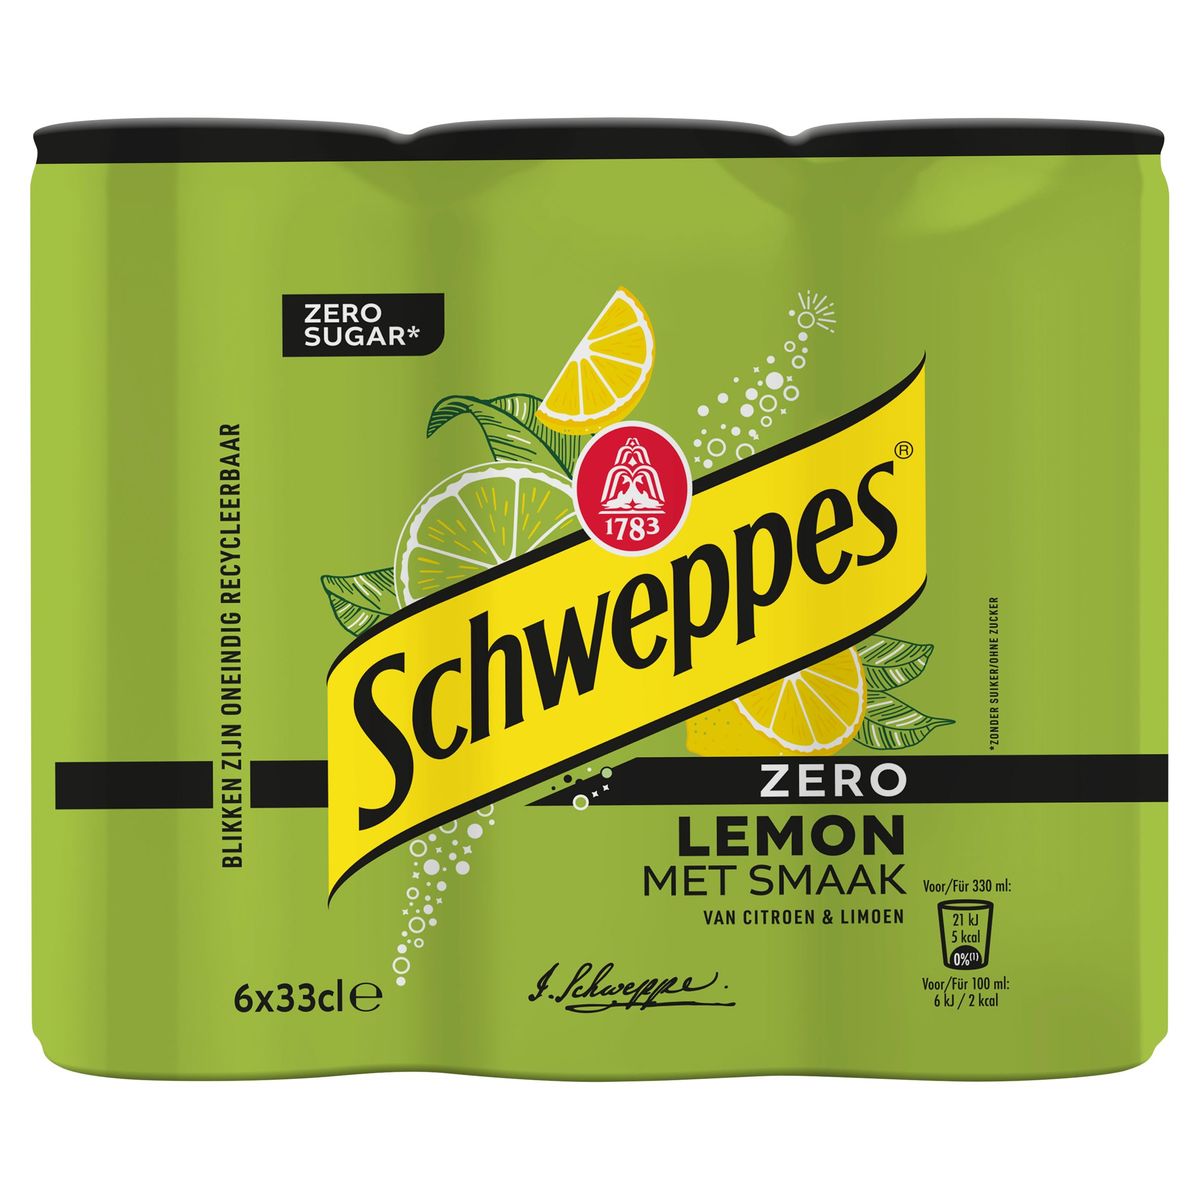 Schweppes Zero Lemon met Smaak van Citroen & Limoen 6 x 33 cl